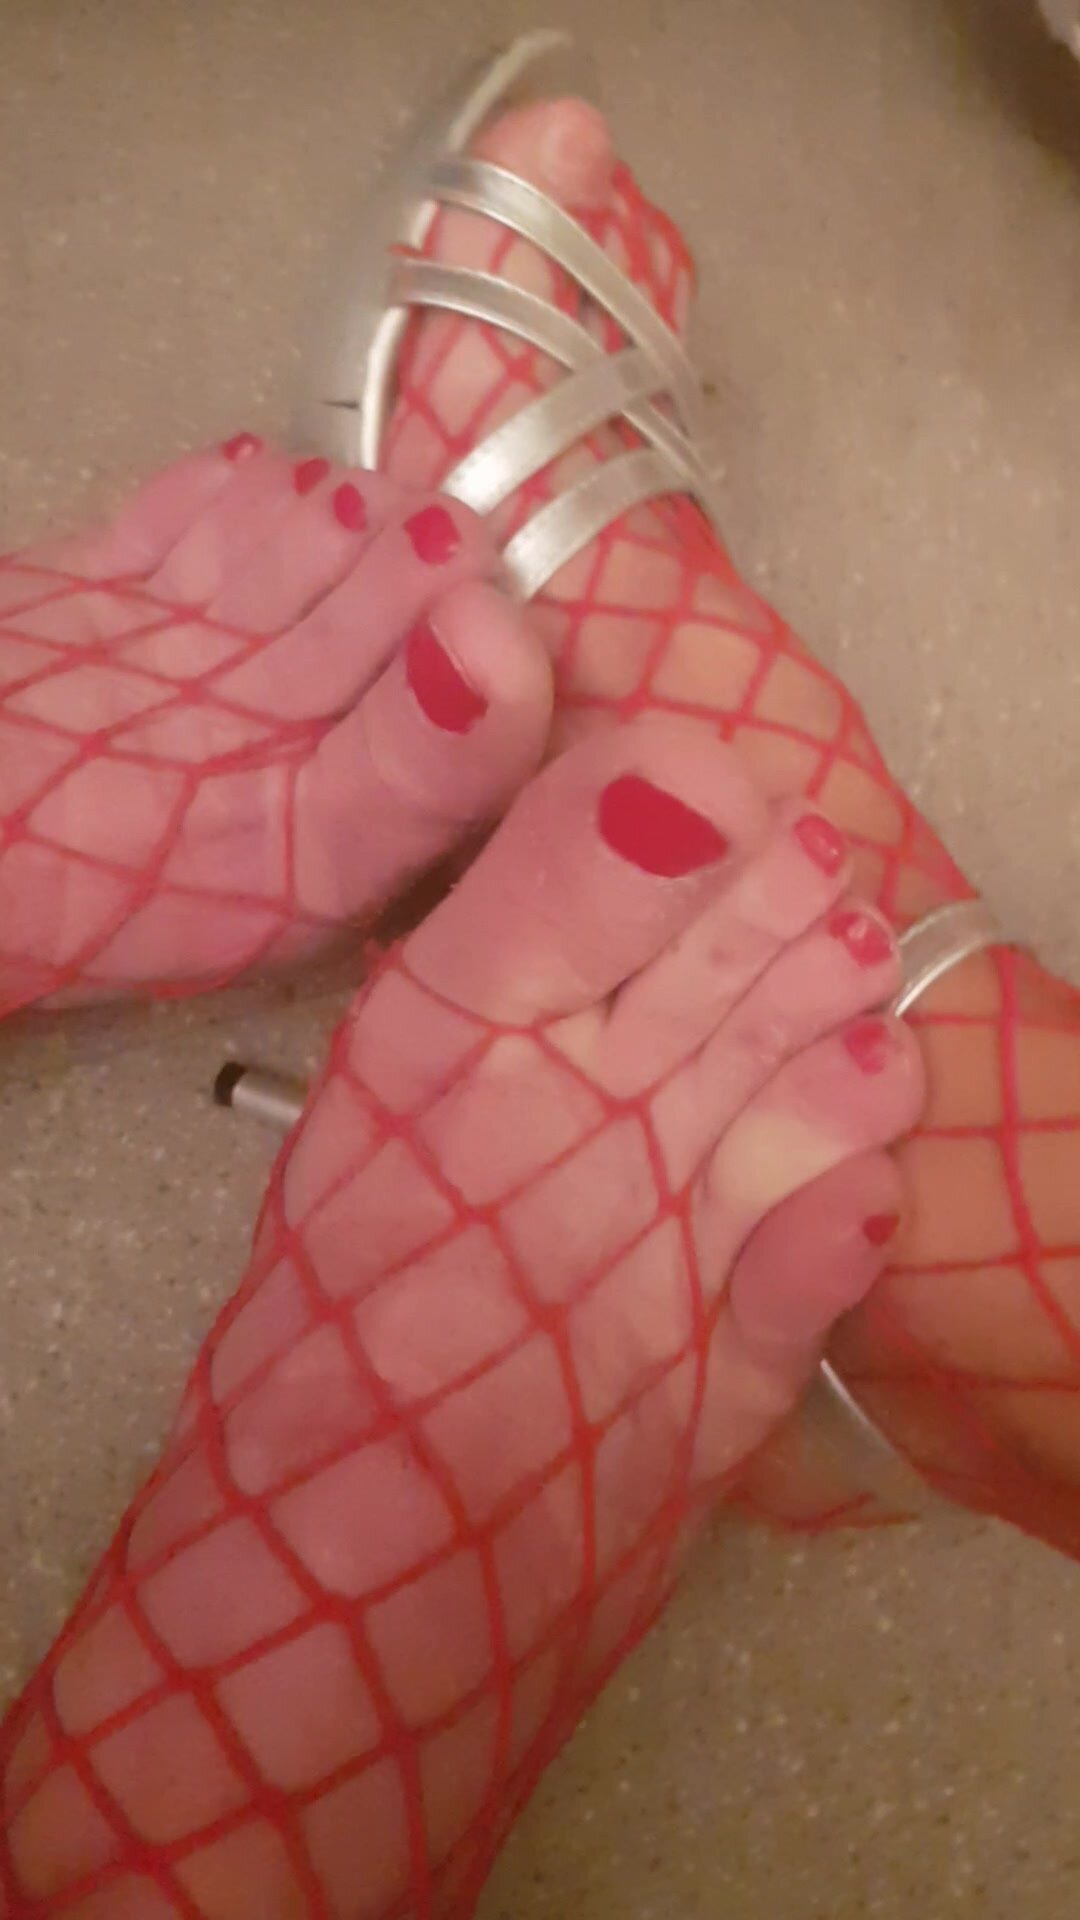 Fishnet mature feet